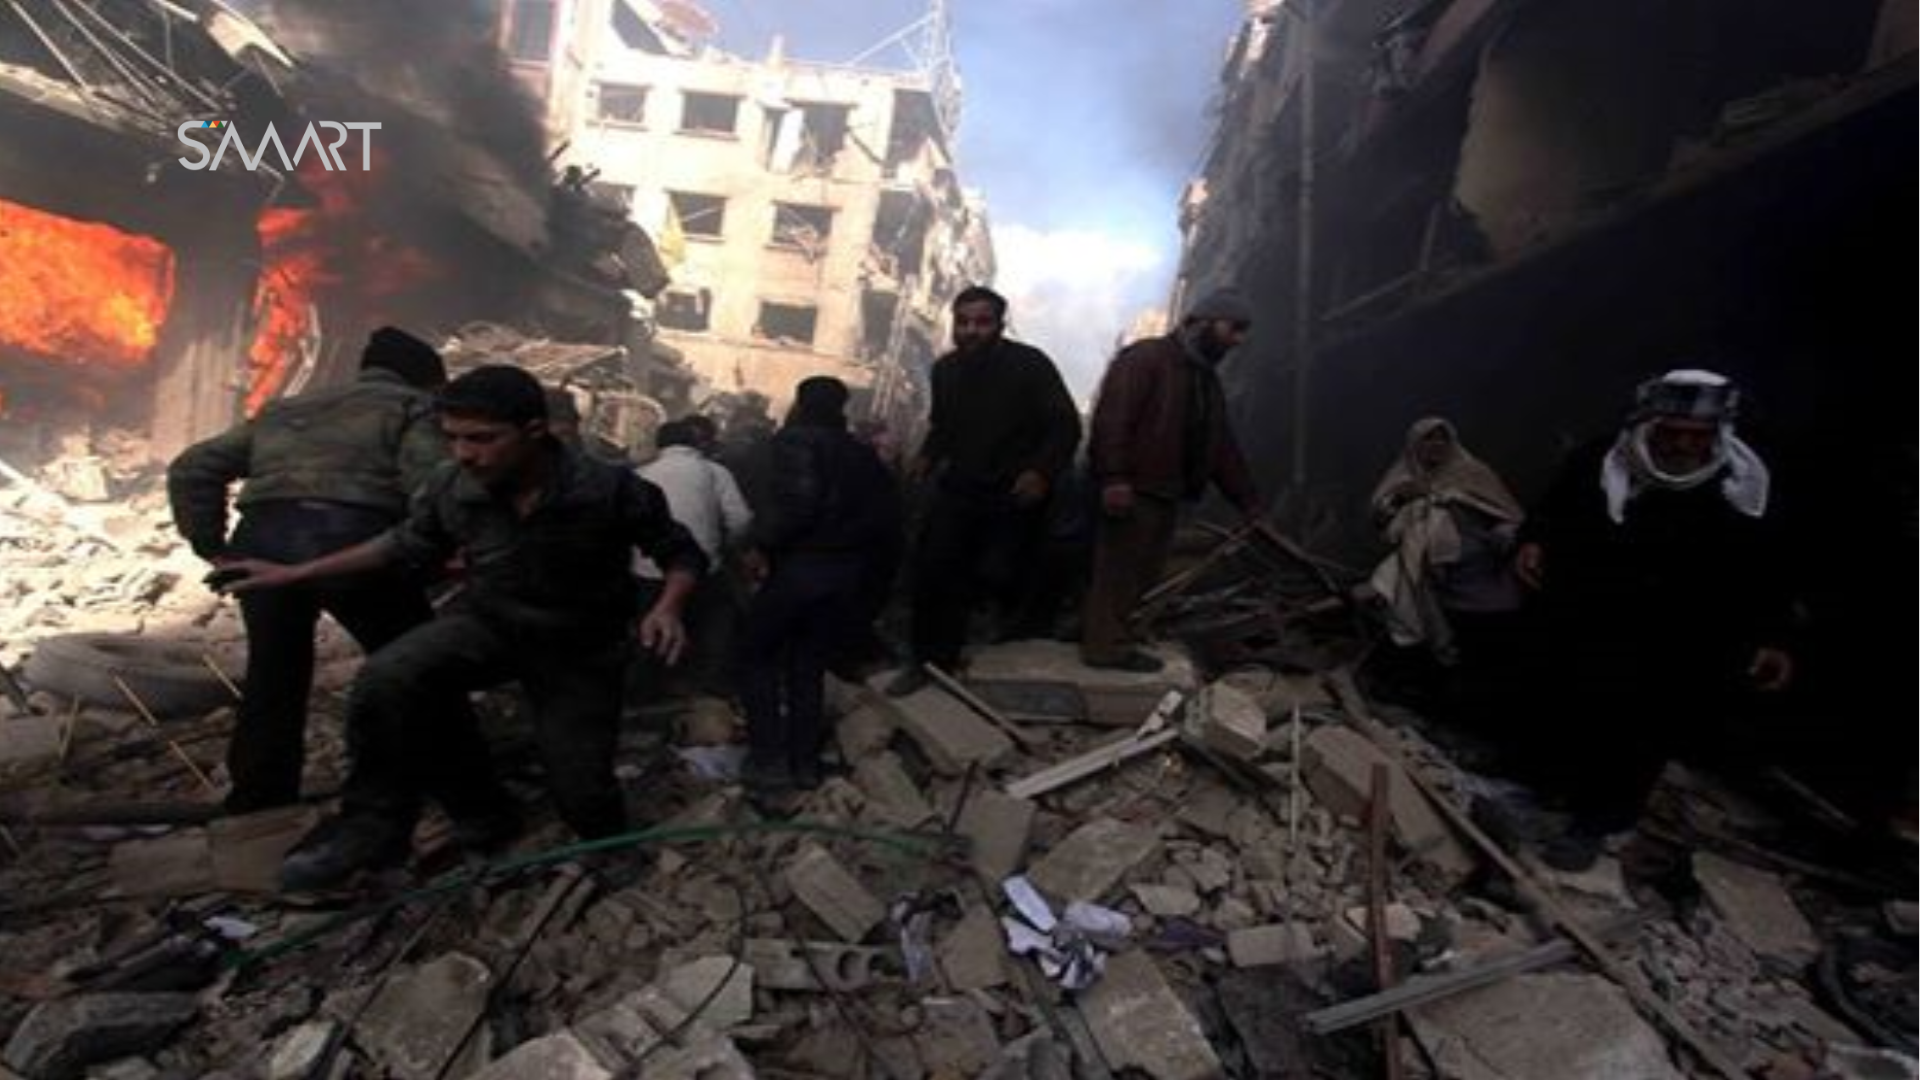 أخبار سوريا- 93 قتيلاً في حلب جراء قصف التحالف الدولي قرية بير محلي بالريف الشرقي، ومقتل أكثر من 40 عنصراً من تنظيم الدولة بريف دمشق- (30_4/ 1-5- 2015)